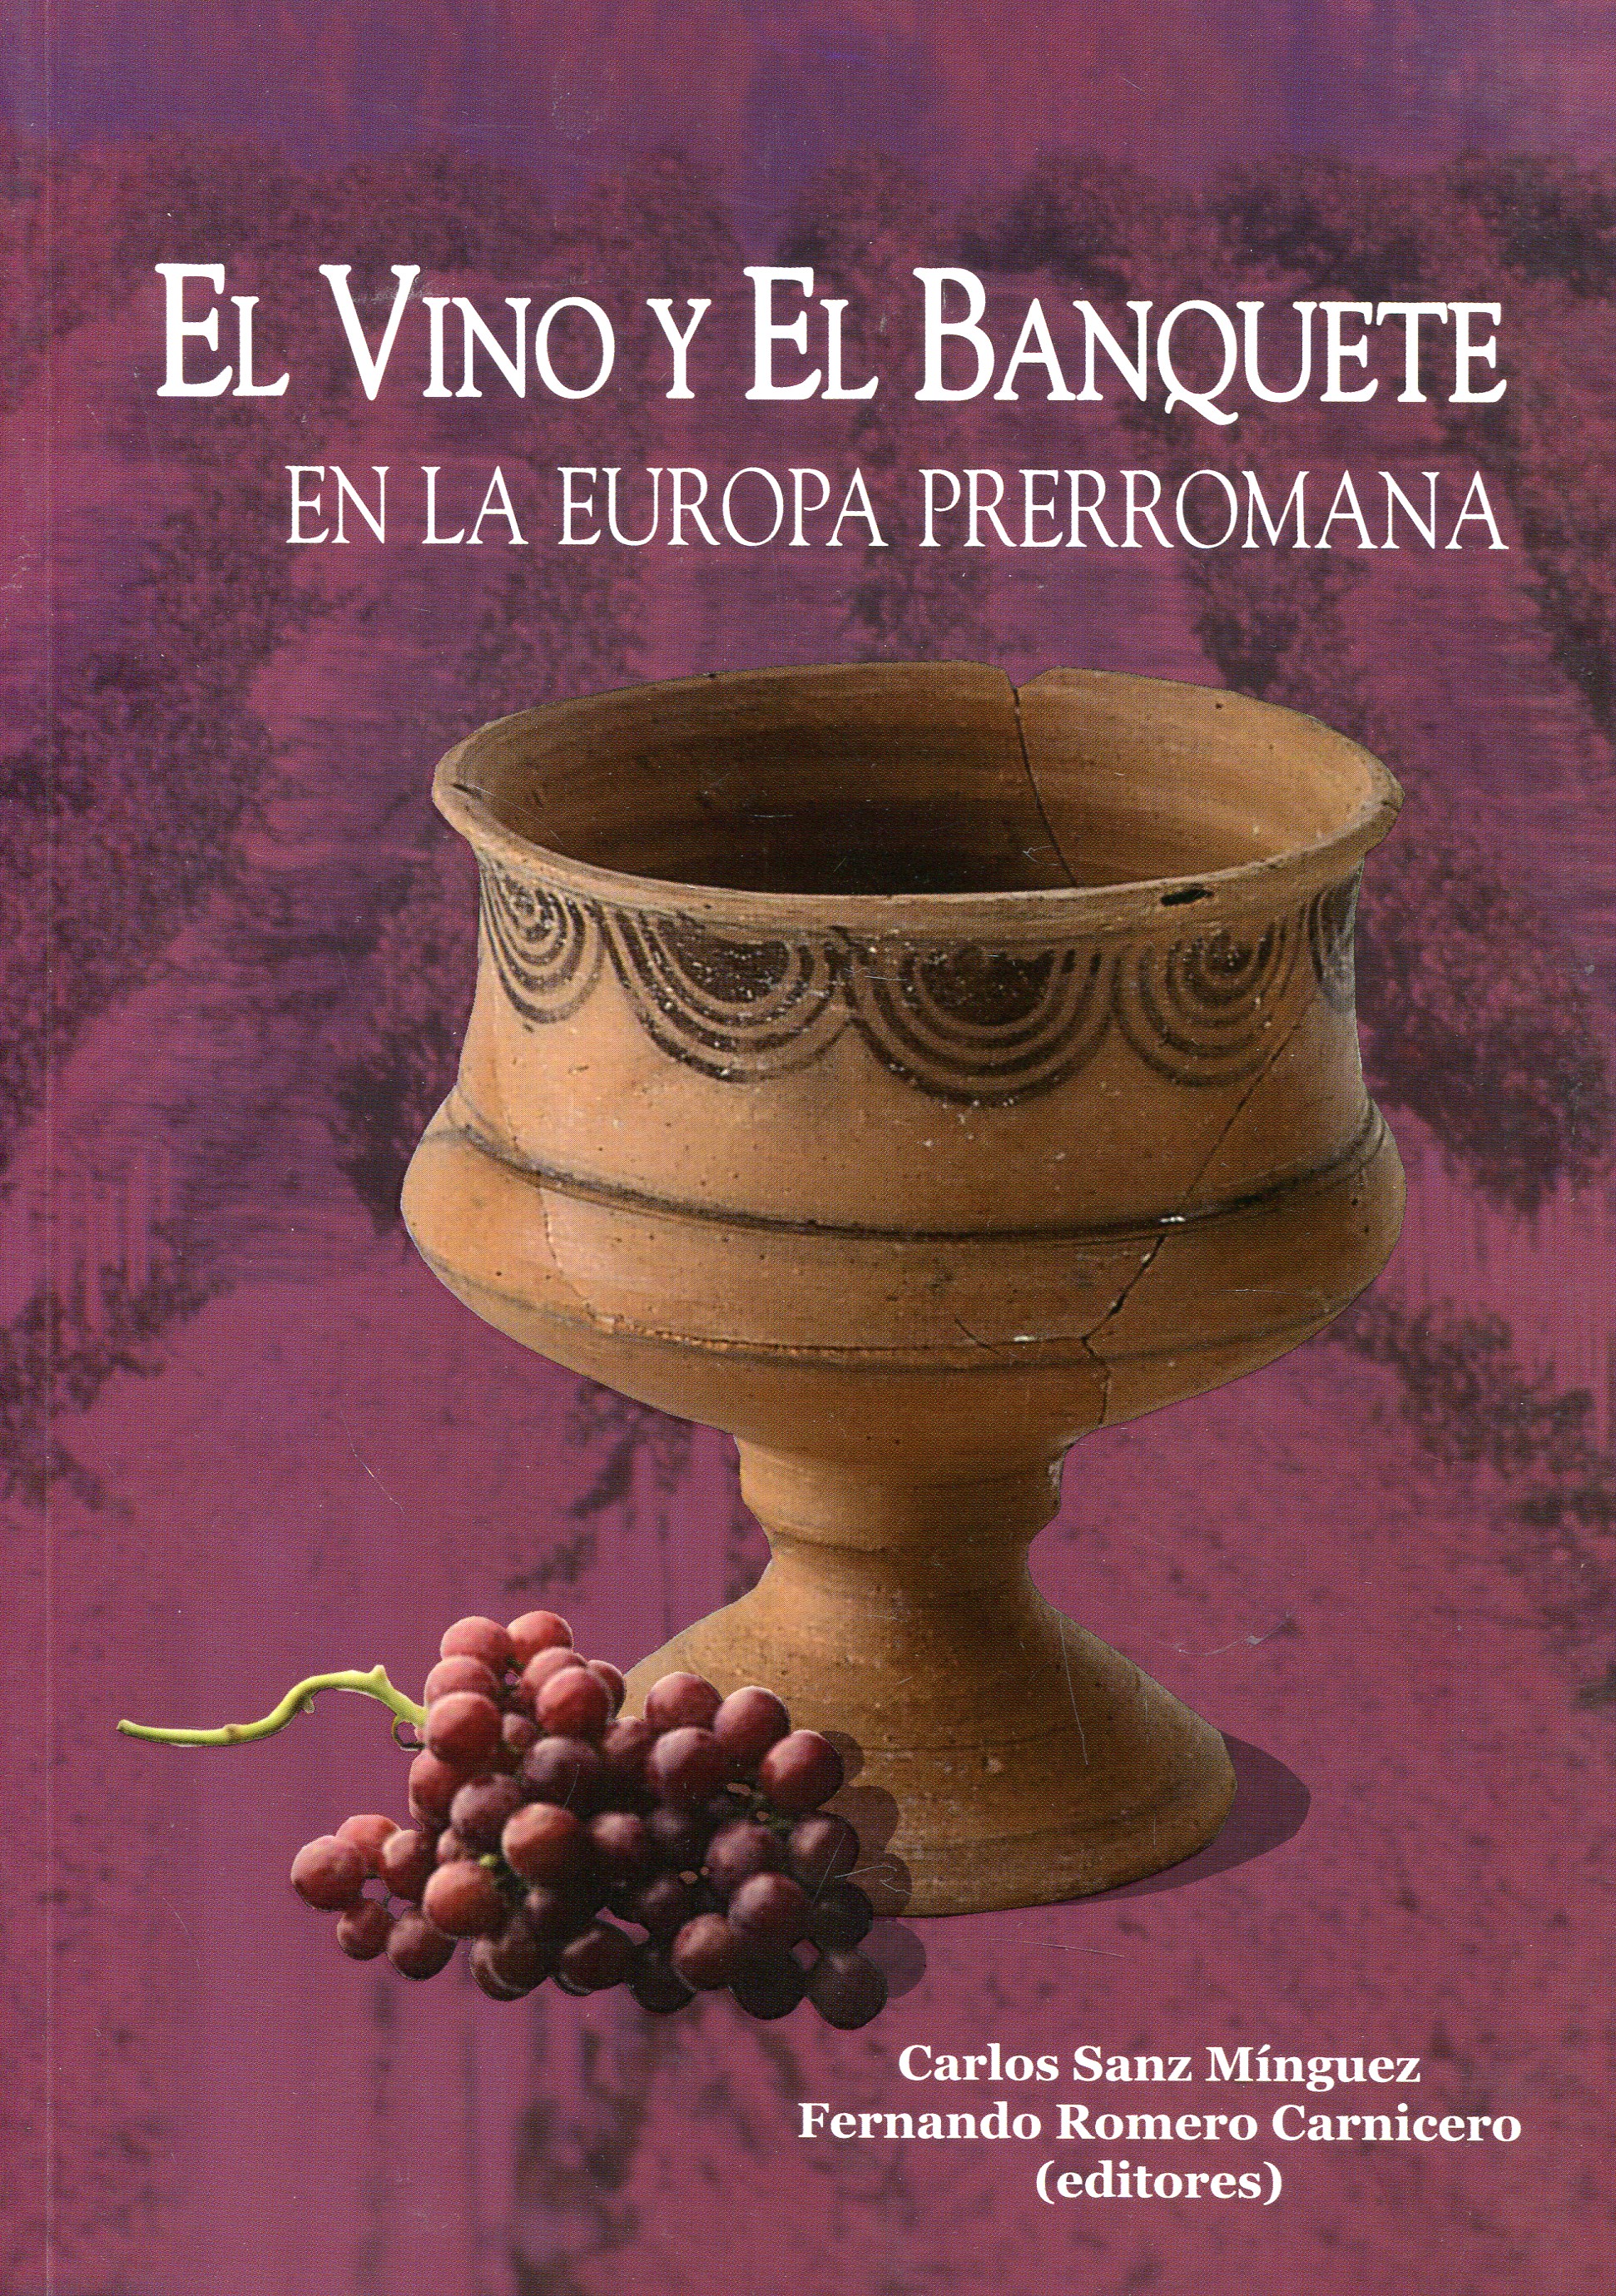 El vino y el banquete en la Europa prerromana